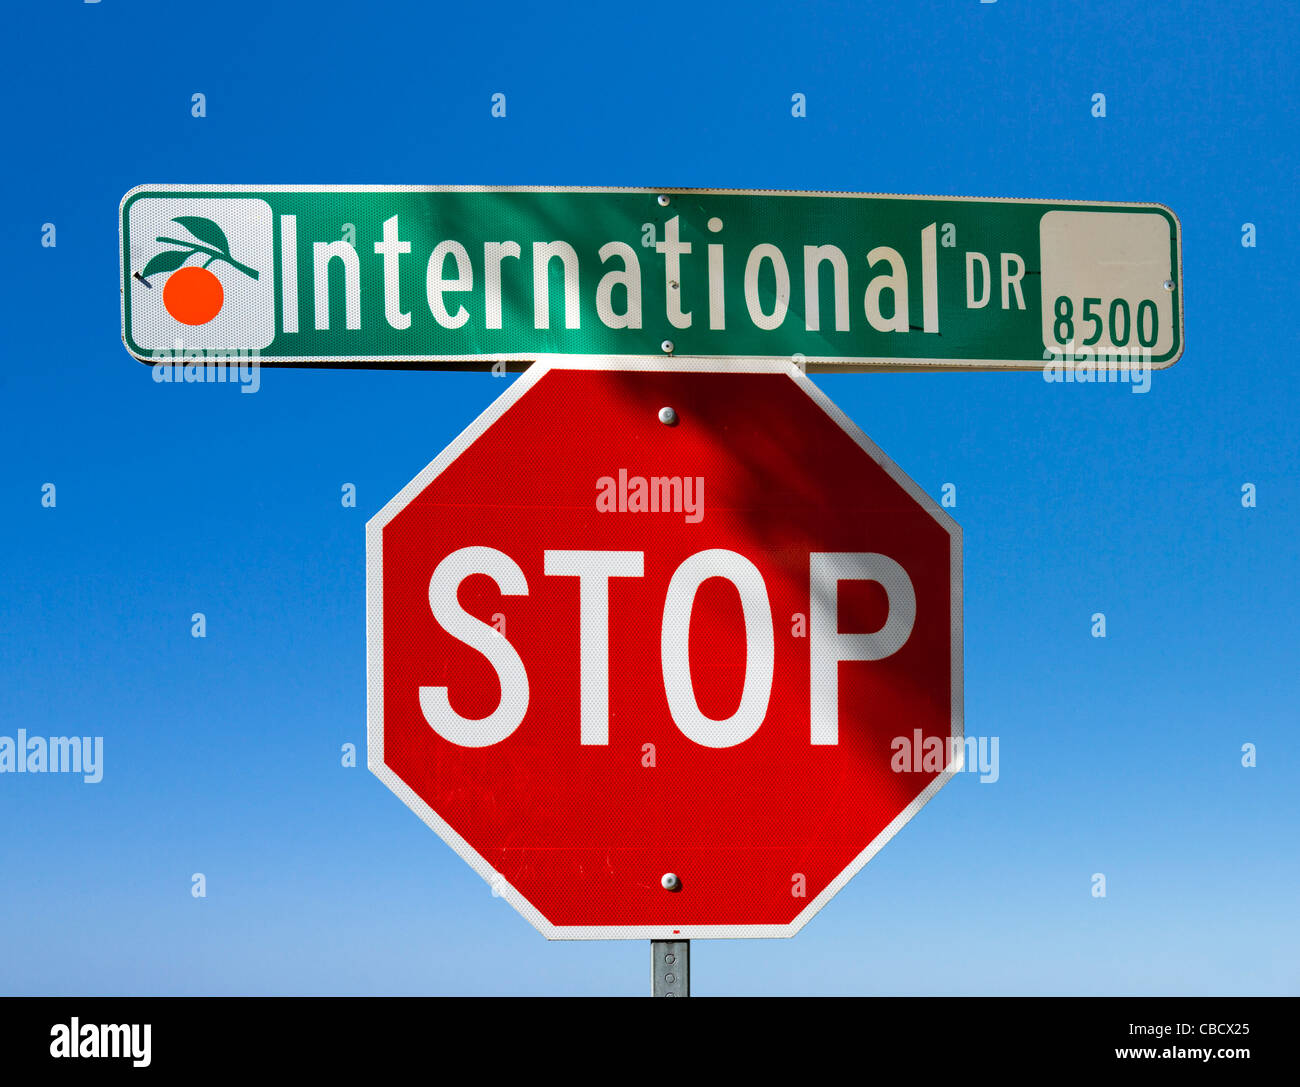 Straße und Stopp-Schilder, Central International Drive, Orlando, Florida, USA Stockfoto